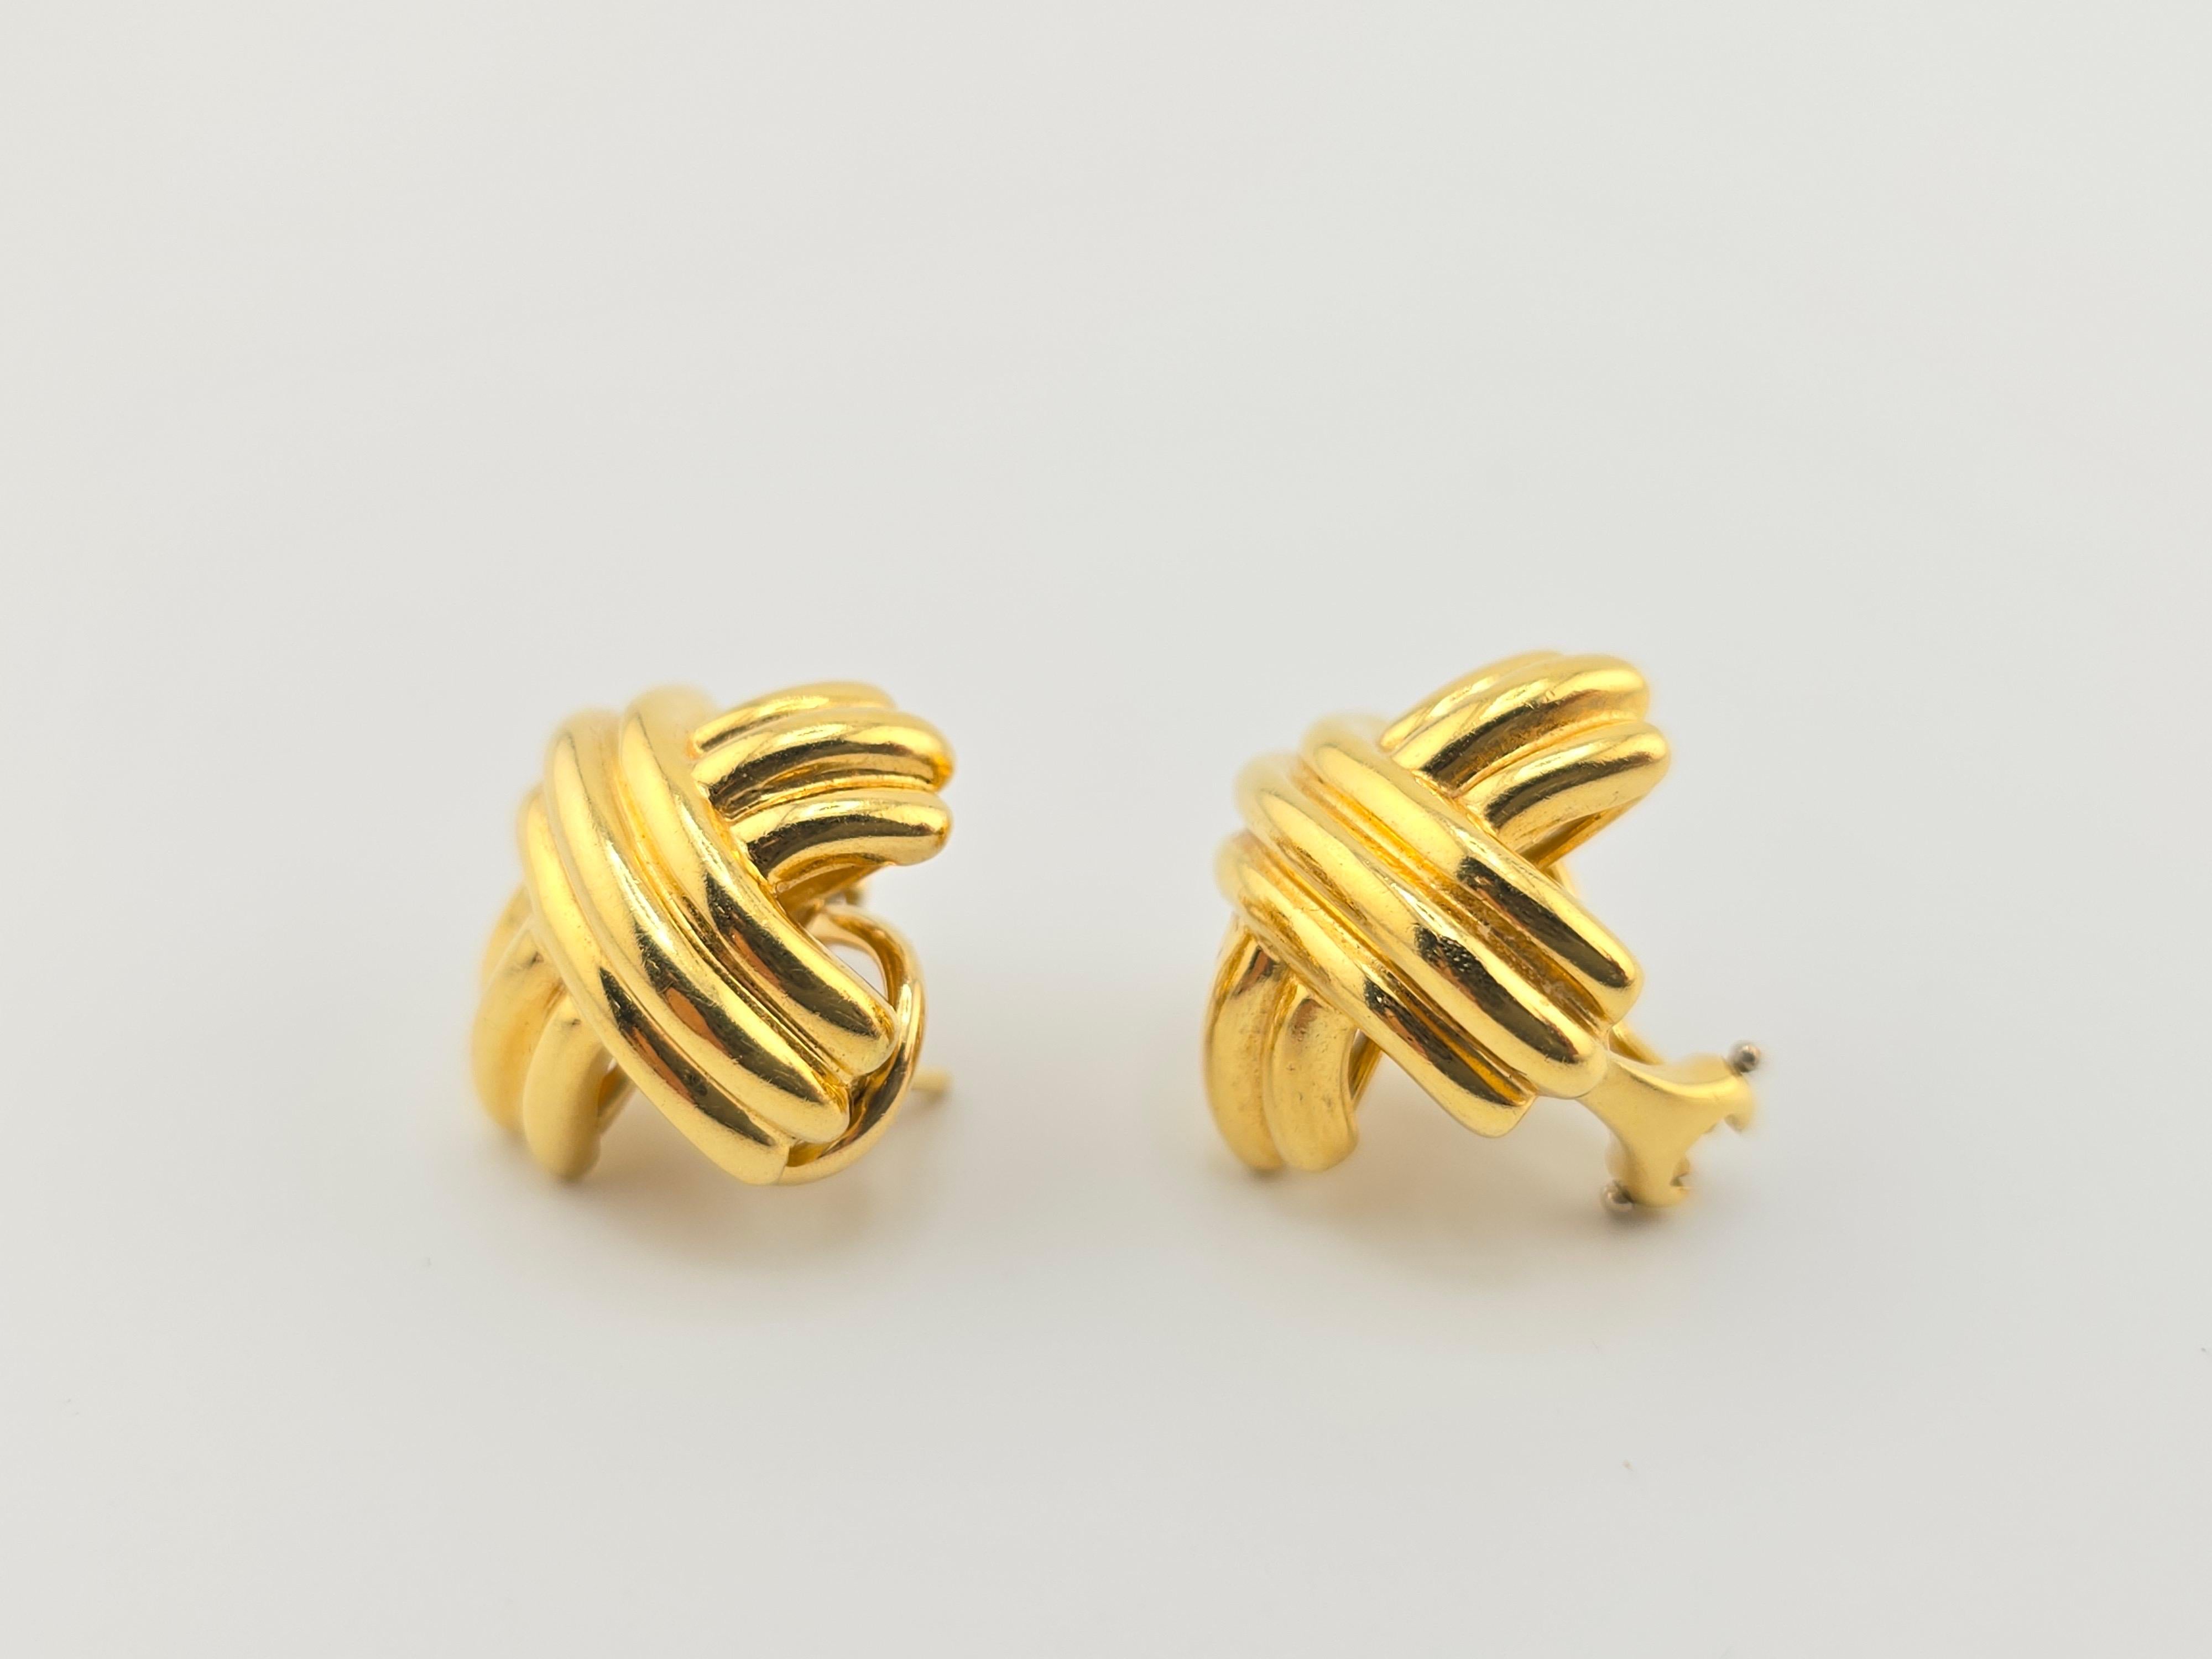 Voici une magnifique paire de boucles d'oreilles Tiffany & Co. en or jaune 18 carats. Les boucles d'oreilles sont en excellent état et prêtes à l'emploi. Chaque pièce est poinçonnée par Tiffany & Co 18 carats. La taille de chaque boucle d'oreille